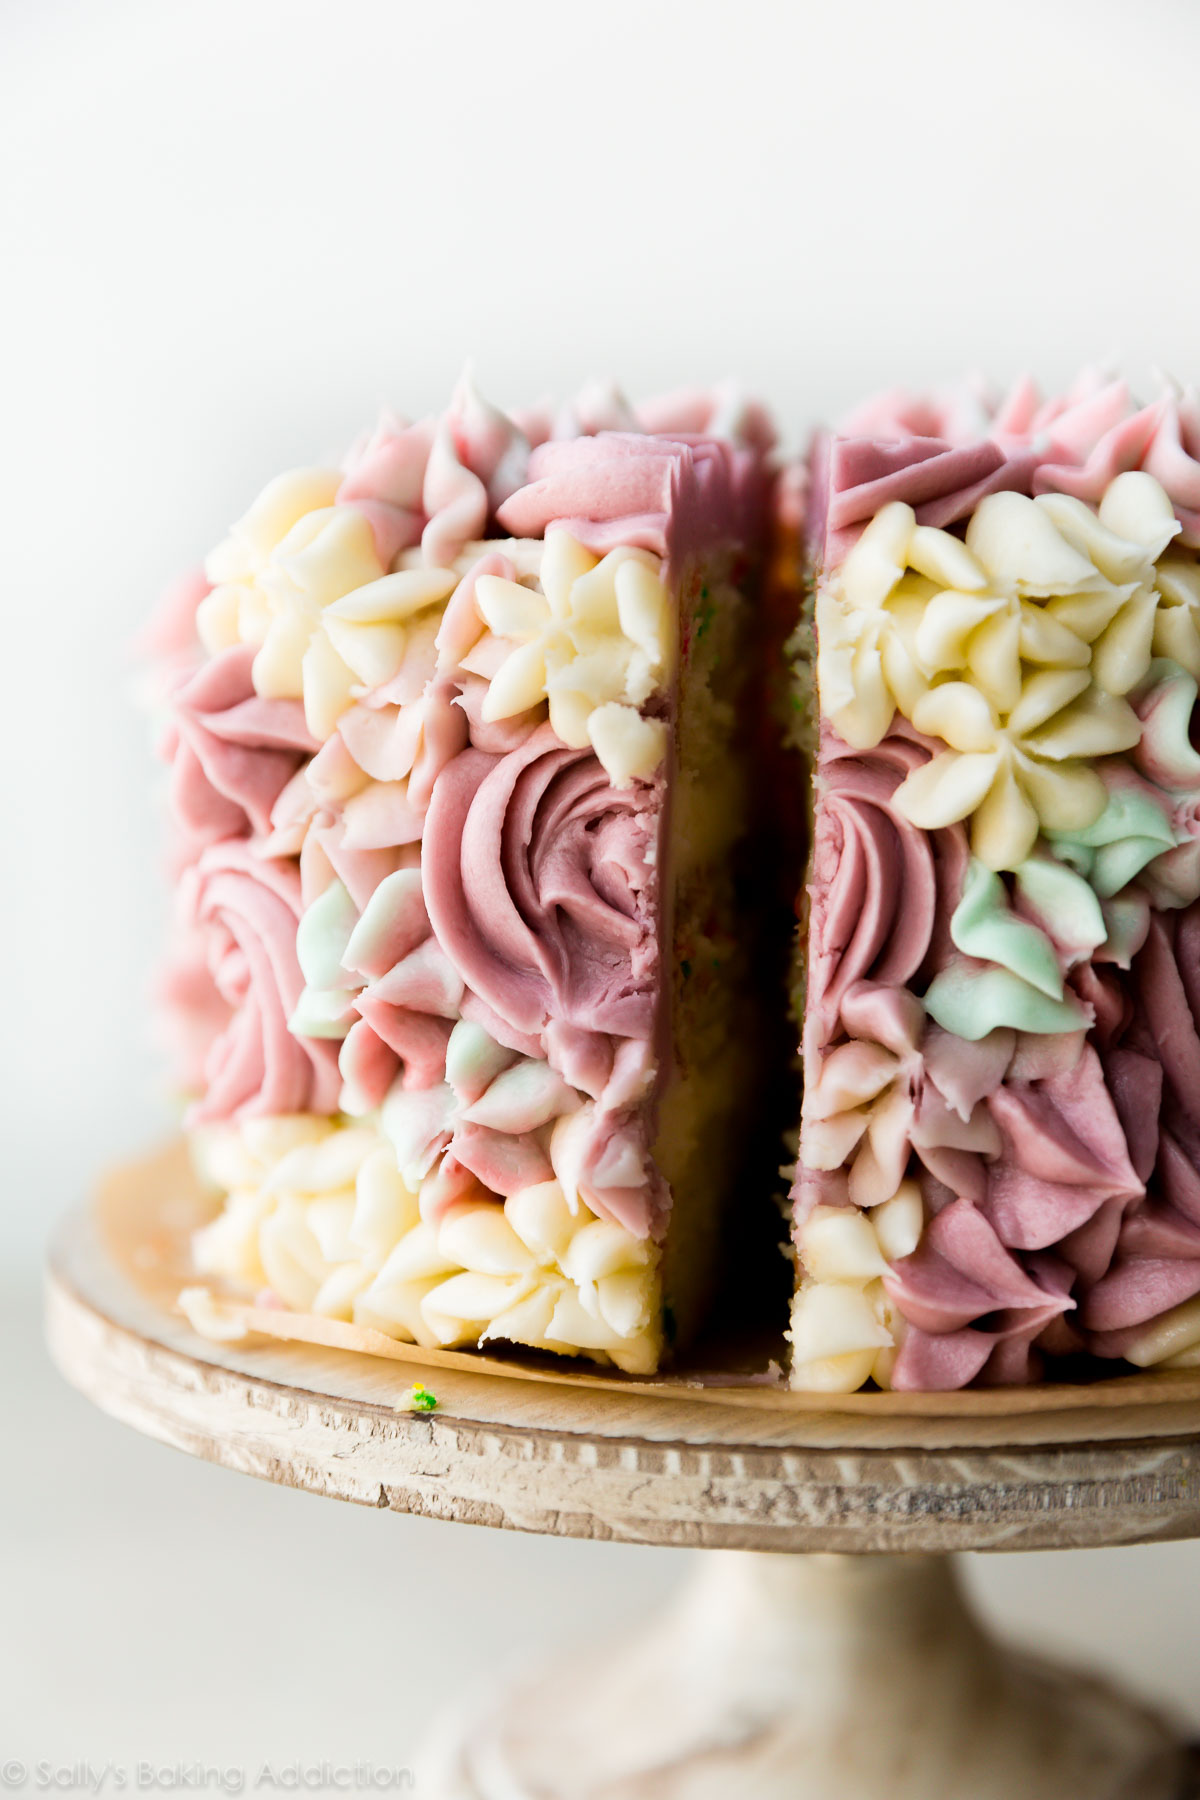 Décoration de glaçage floral facile sur le gâteau